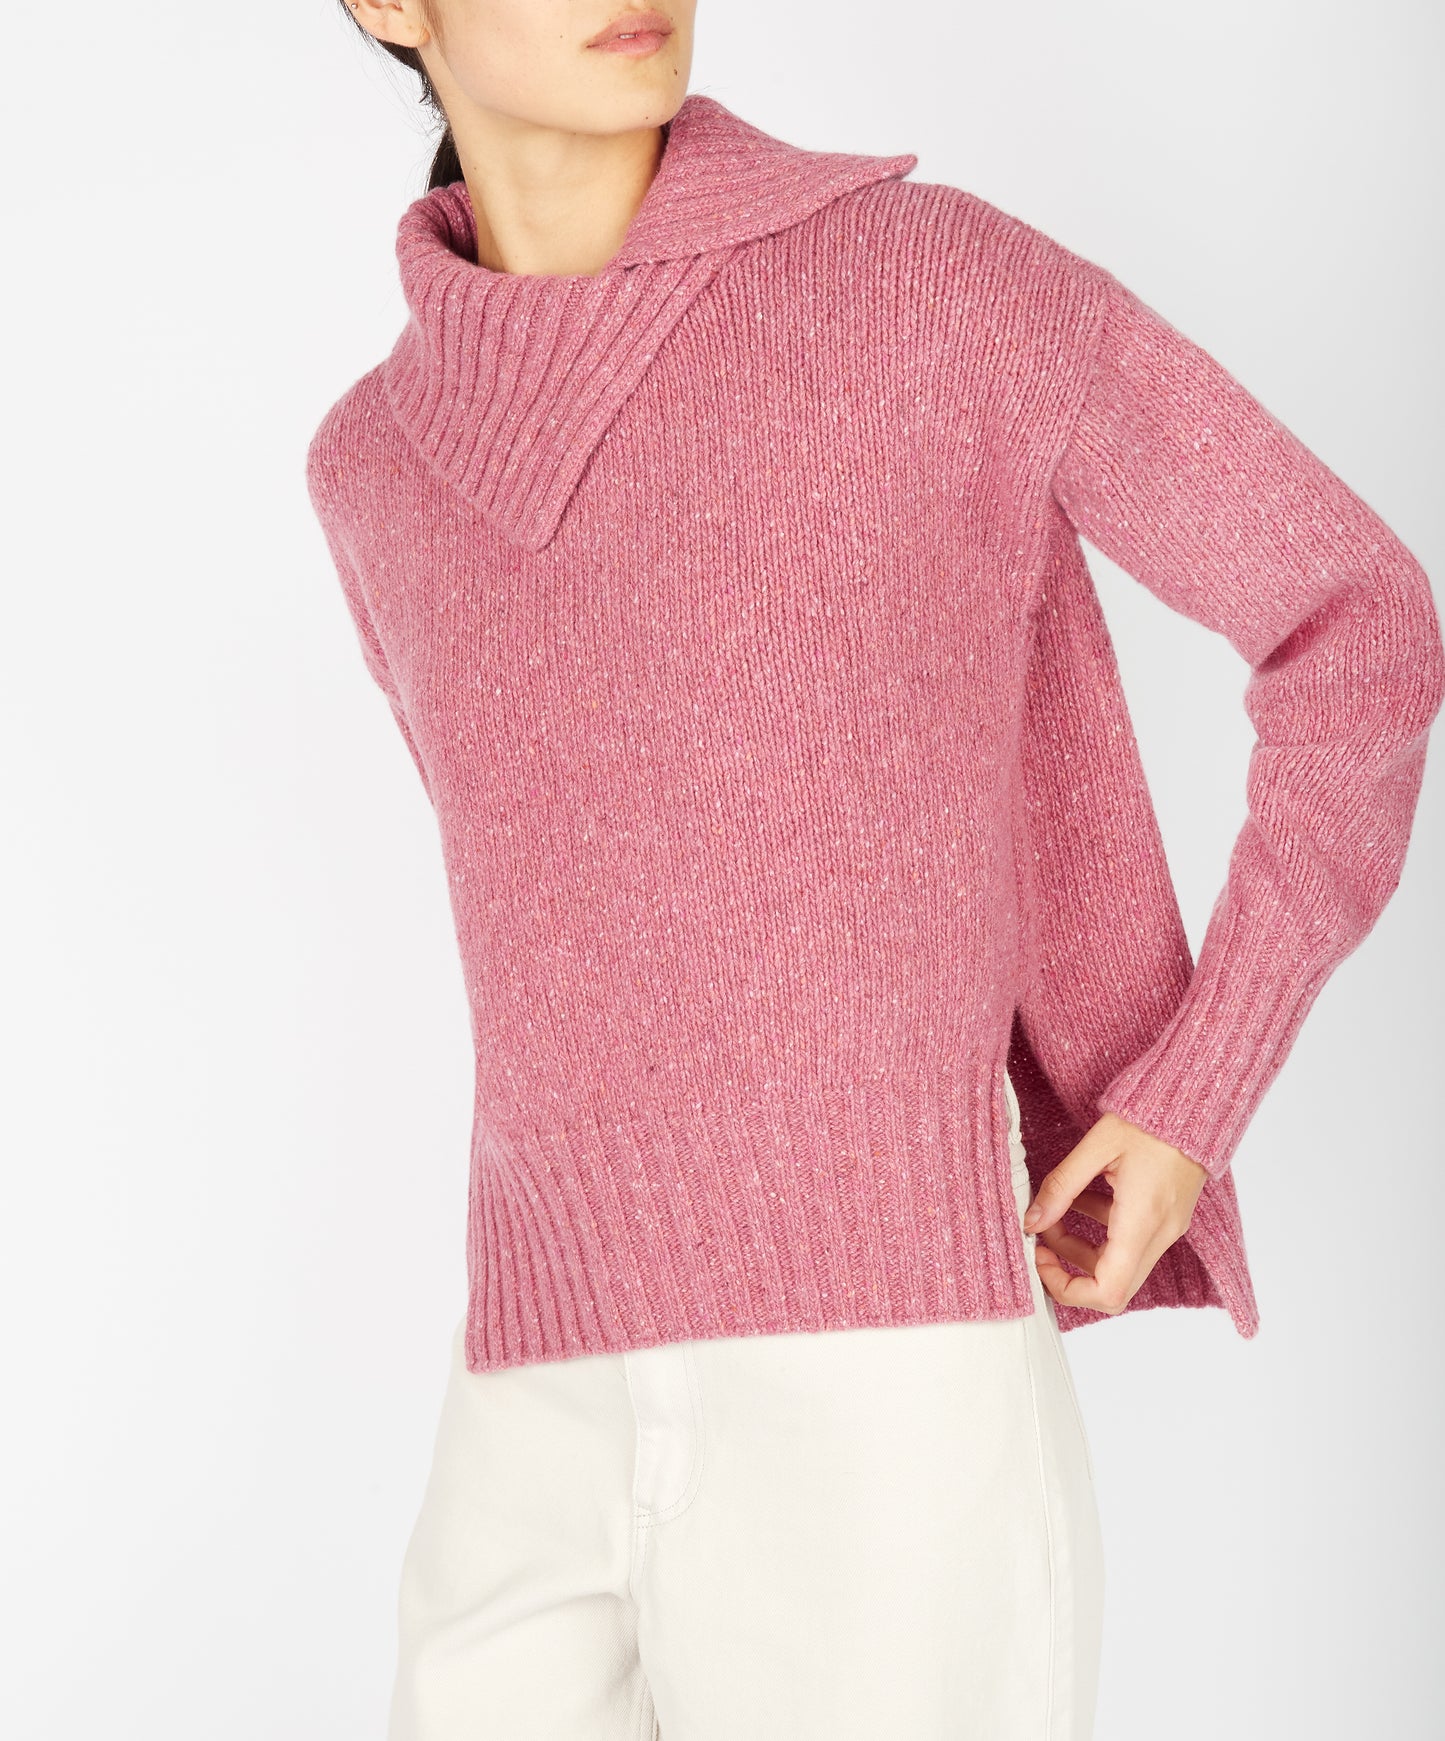 IrelandsEye Knitwear Wilde Slouchy Funnel Neck Sweater Bubblegum pink